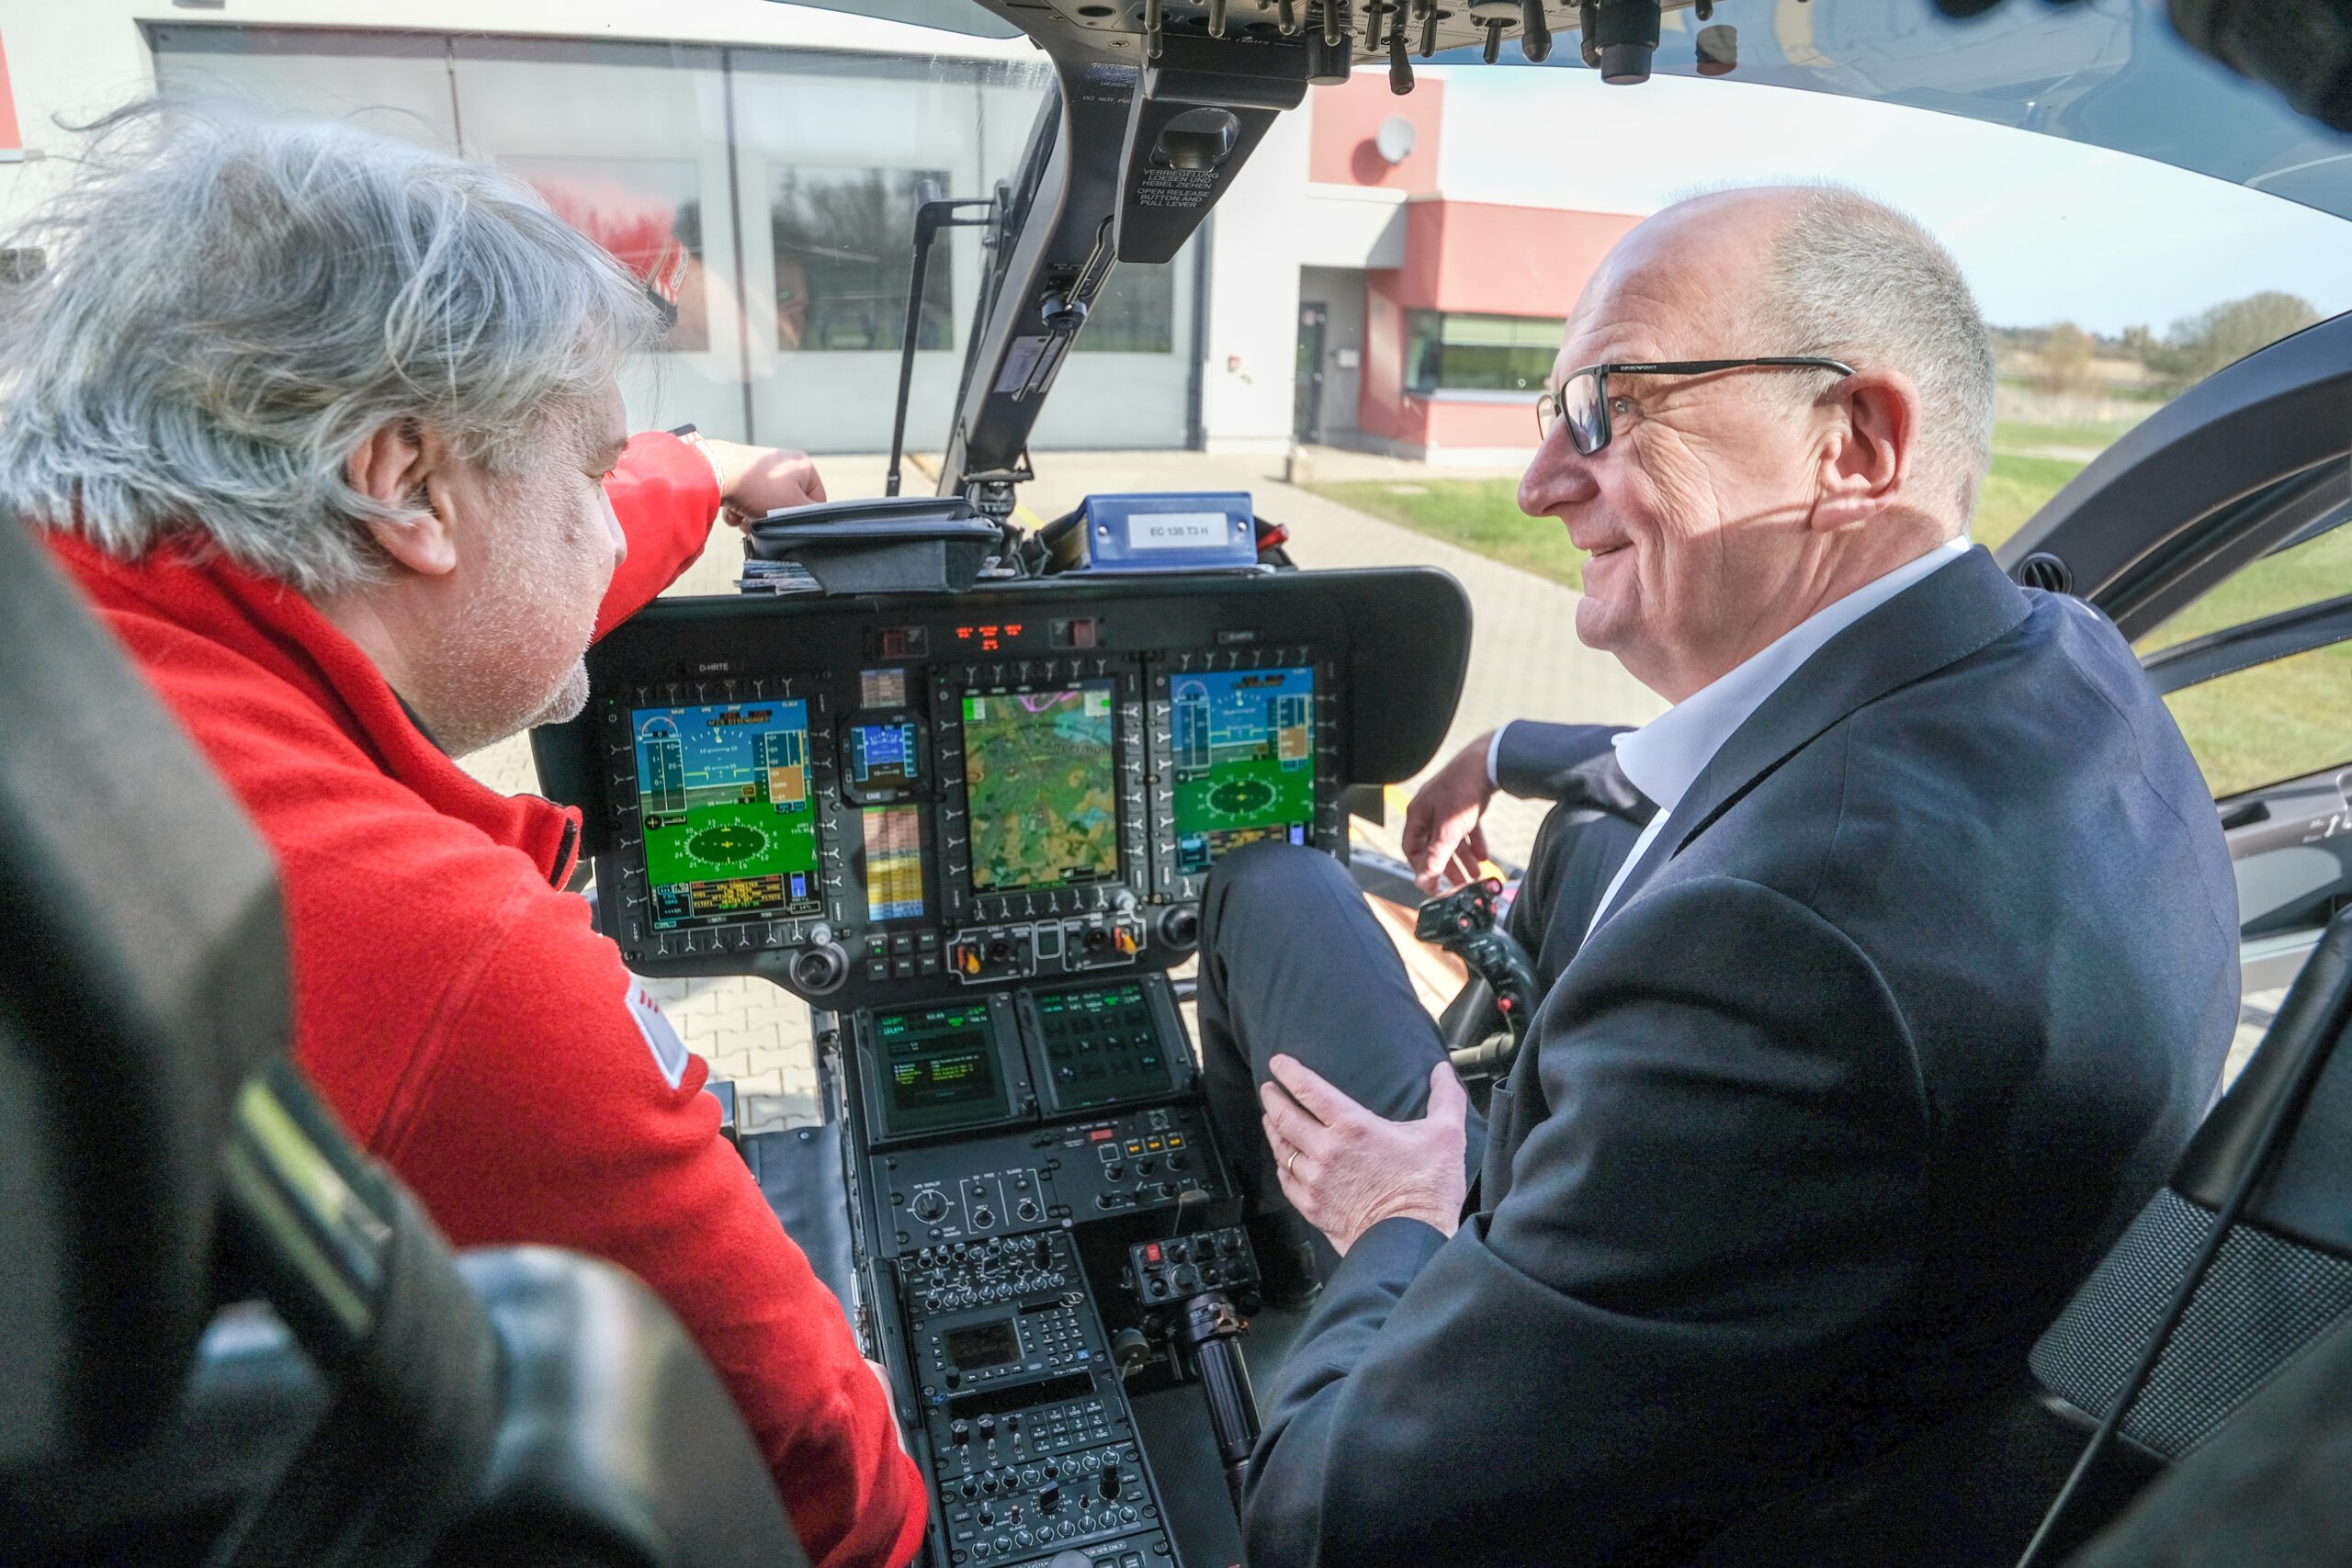 Gestern besuchte der brandenburgische Ministerpräsident Dr. Dietmar Woidke die Station Angermünde der DRF Luftrettung. Der Ministerpräsident würdigte im Gespräch die wichtige Rolle der Luftrettungsstation für eine umfassende Notfallversorgung der Menschen in der Region.